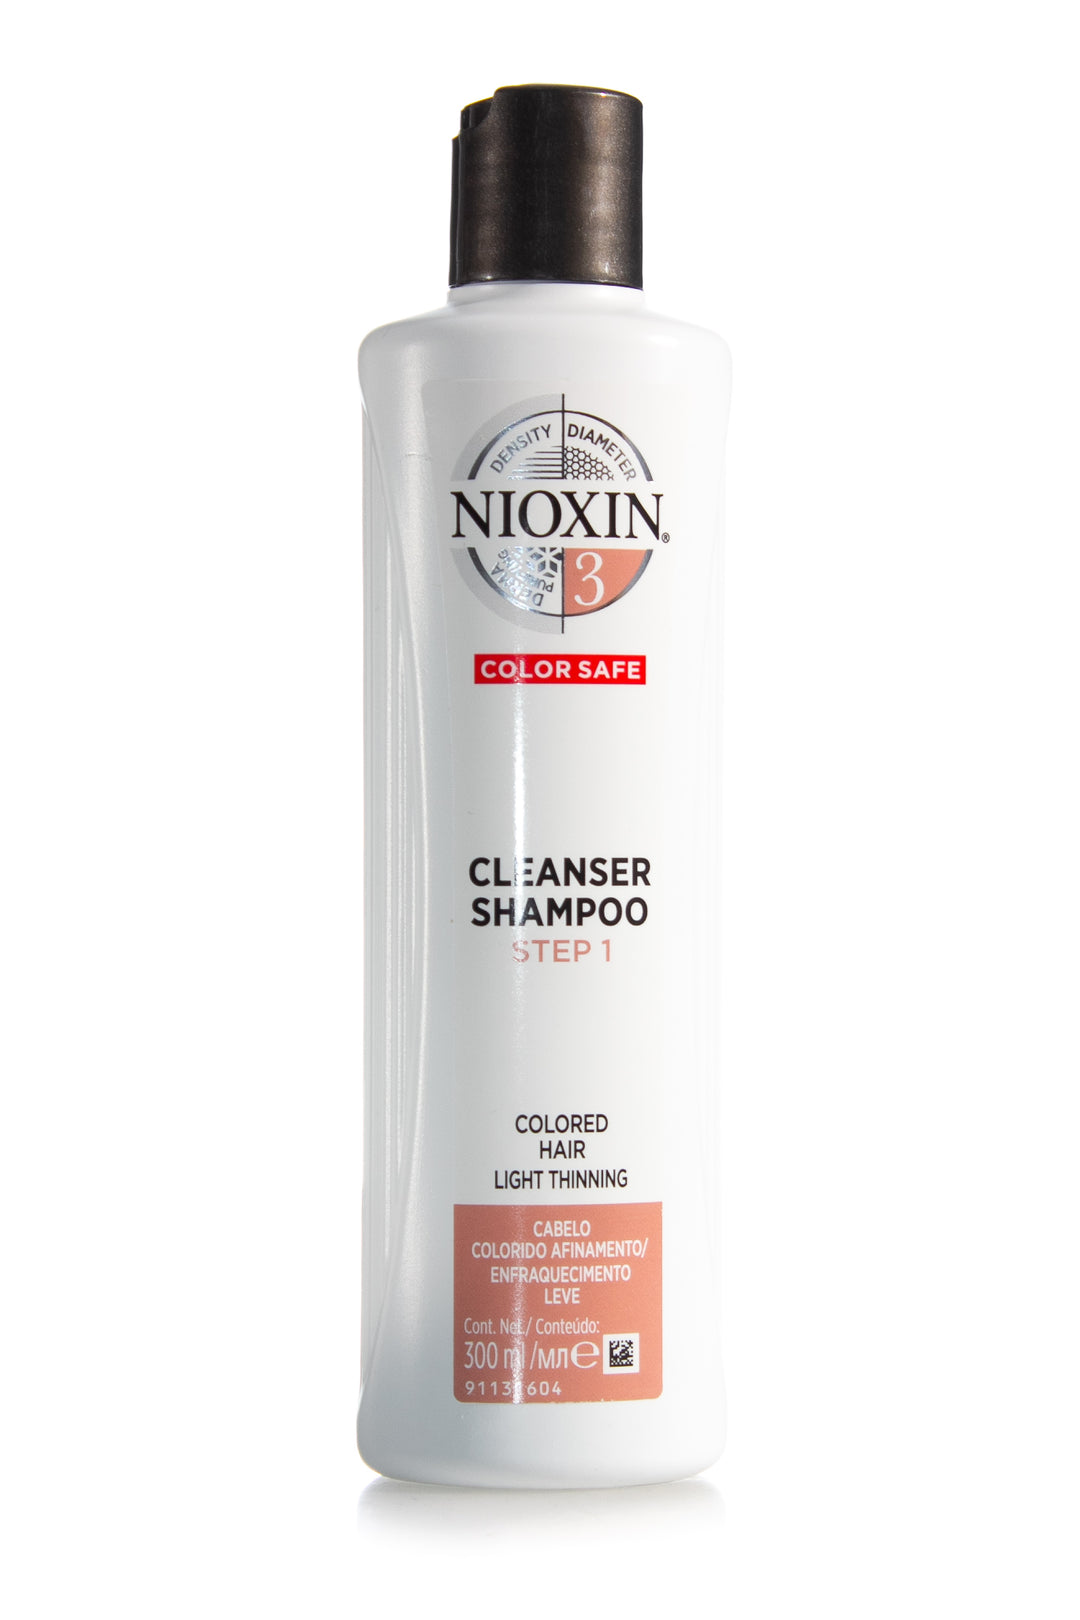 nioxin-system-3-cleanser-shampoo-300ml